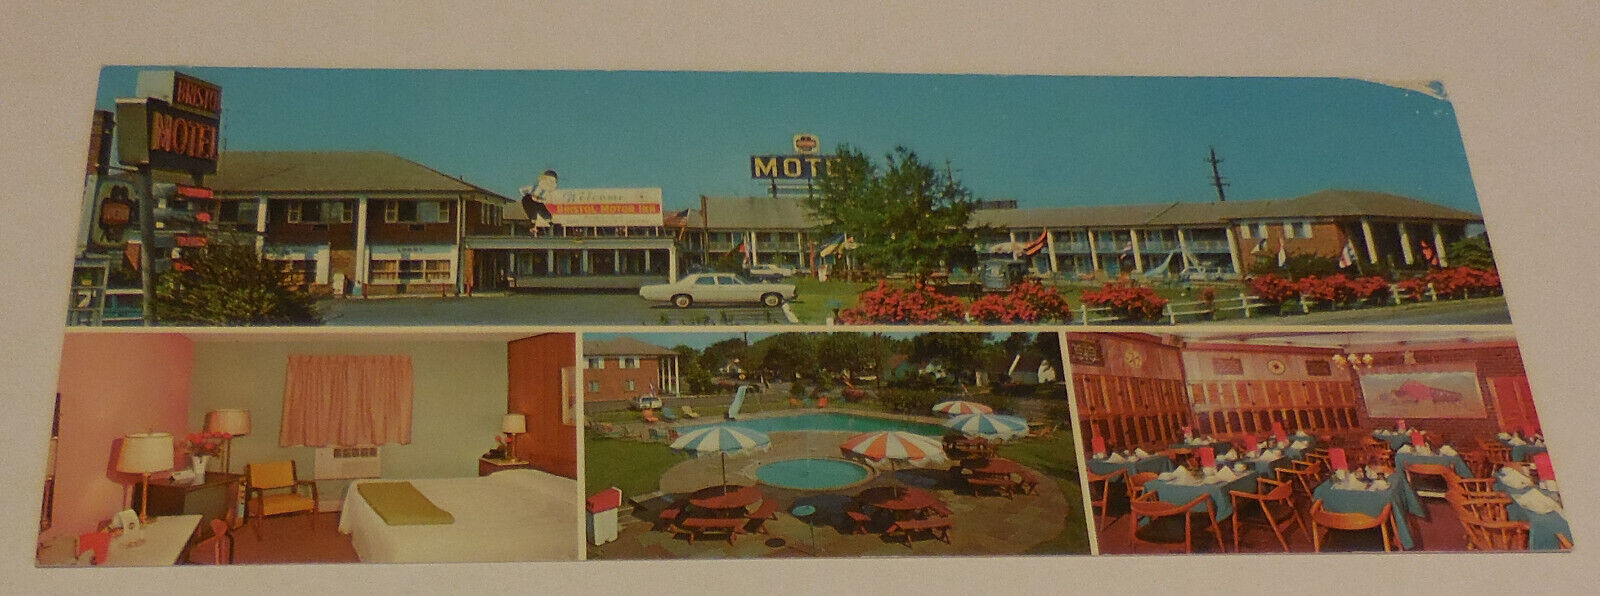 1 Bristol motel Inn Bristol Pennsylvania Postcard 8 1/4\